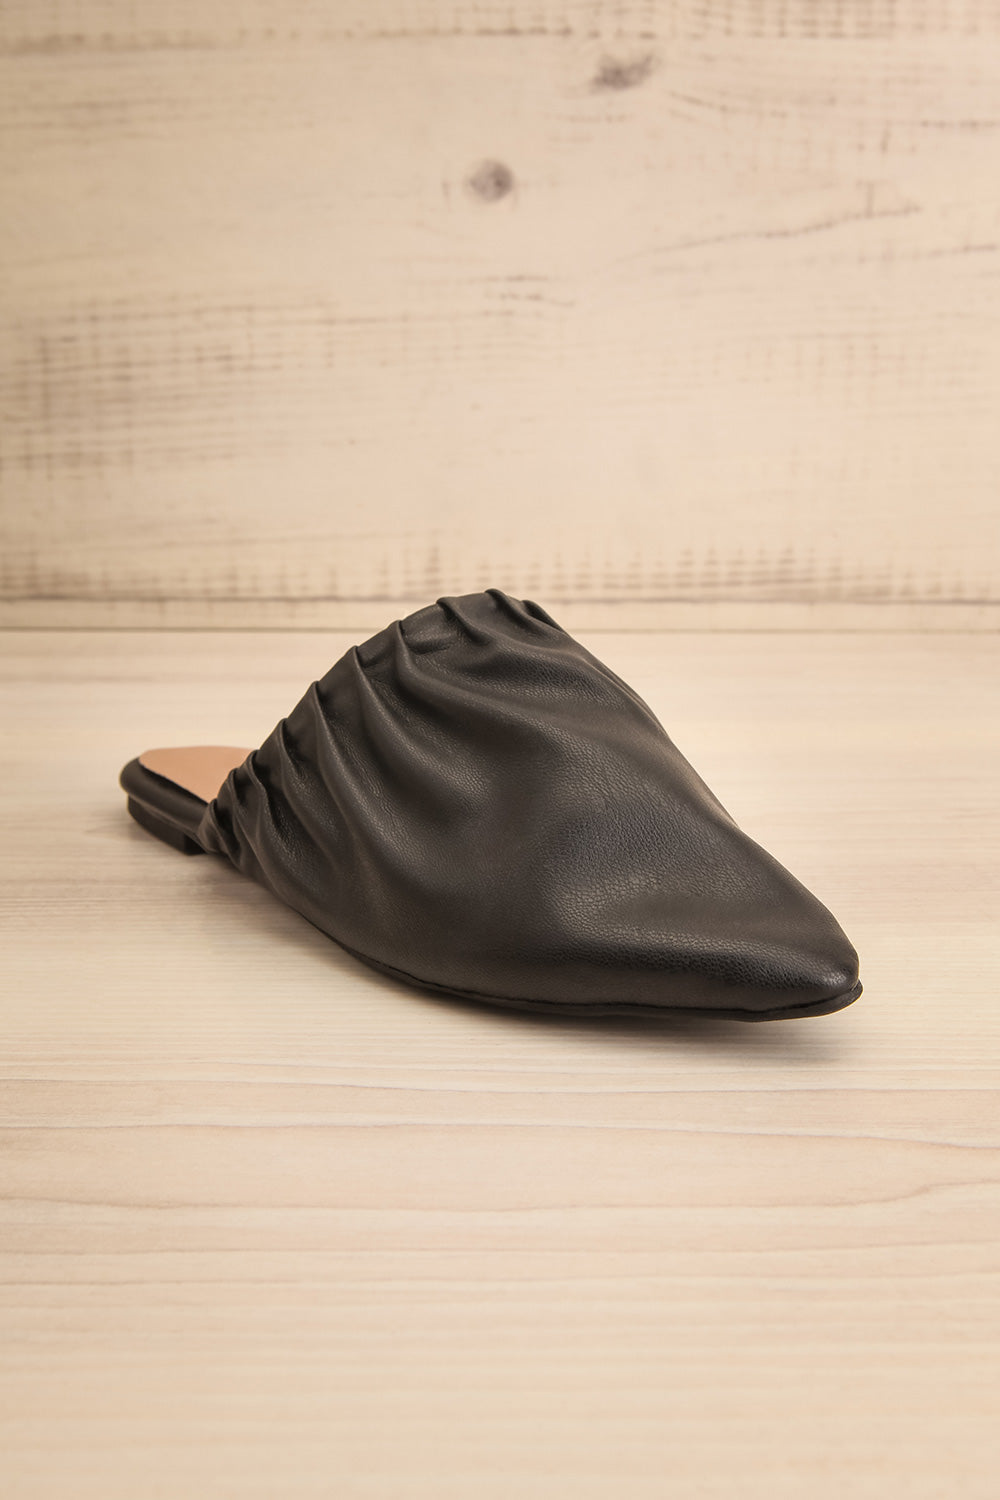 Vancouver Black Faux-Leather Pointed Toe Mules | La petite garçonne front view